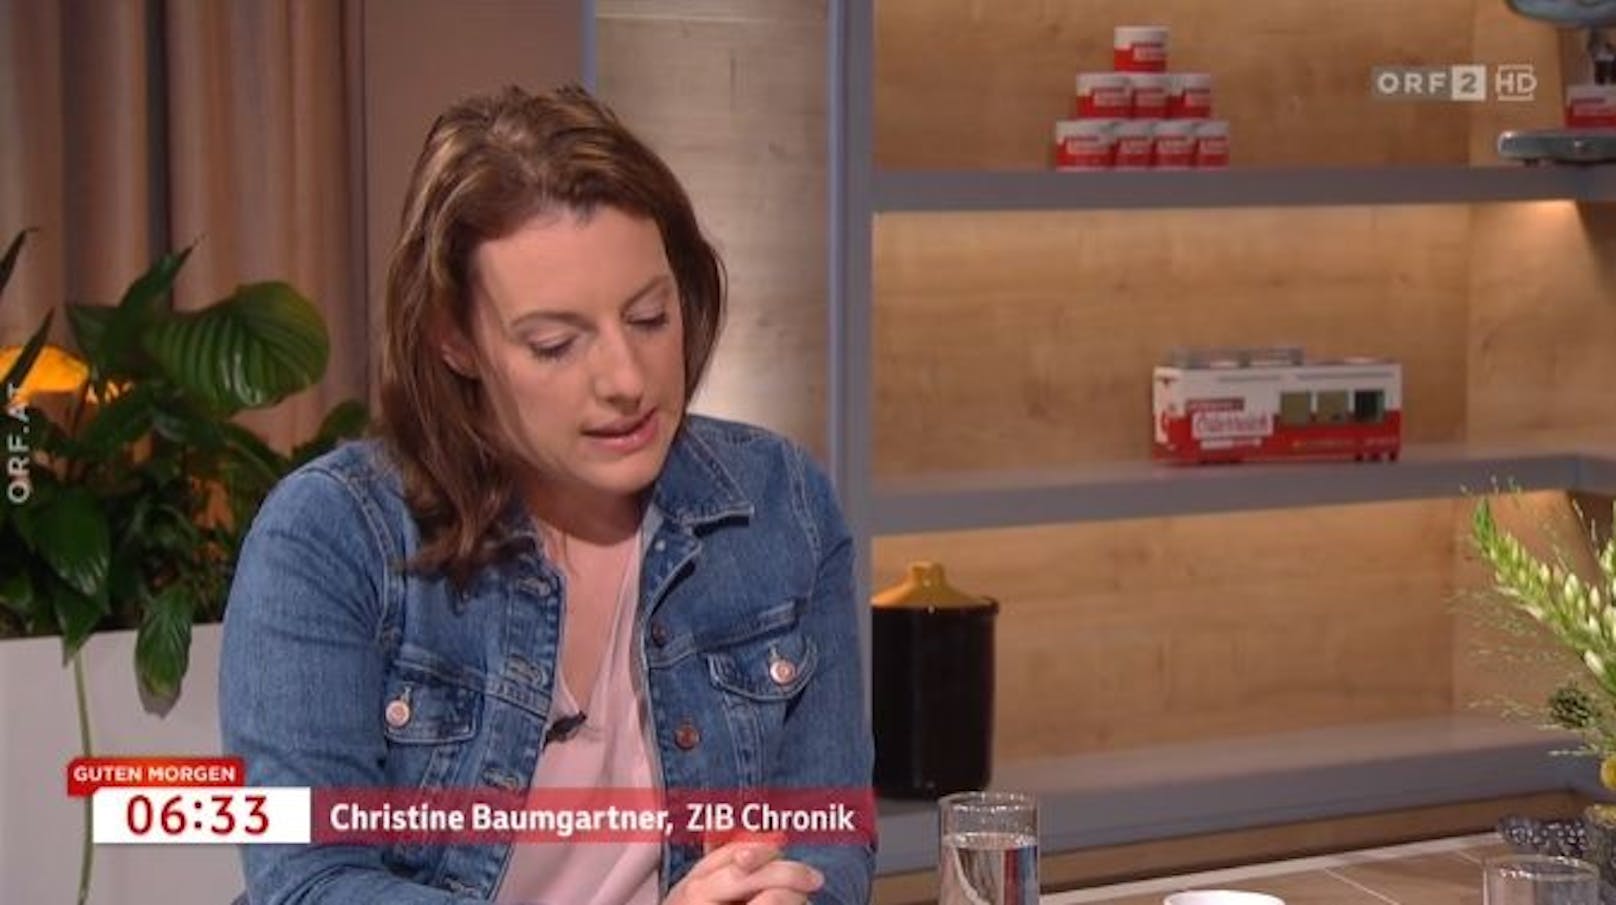 Christine Baumgartner (ZIB-Chronik) äußert sich zur Attacke.